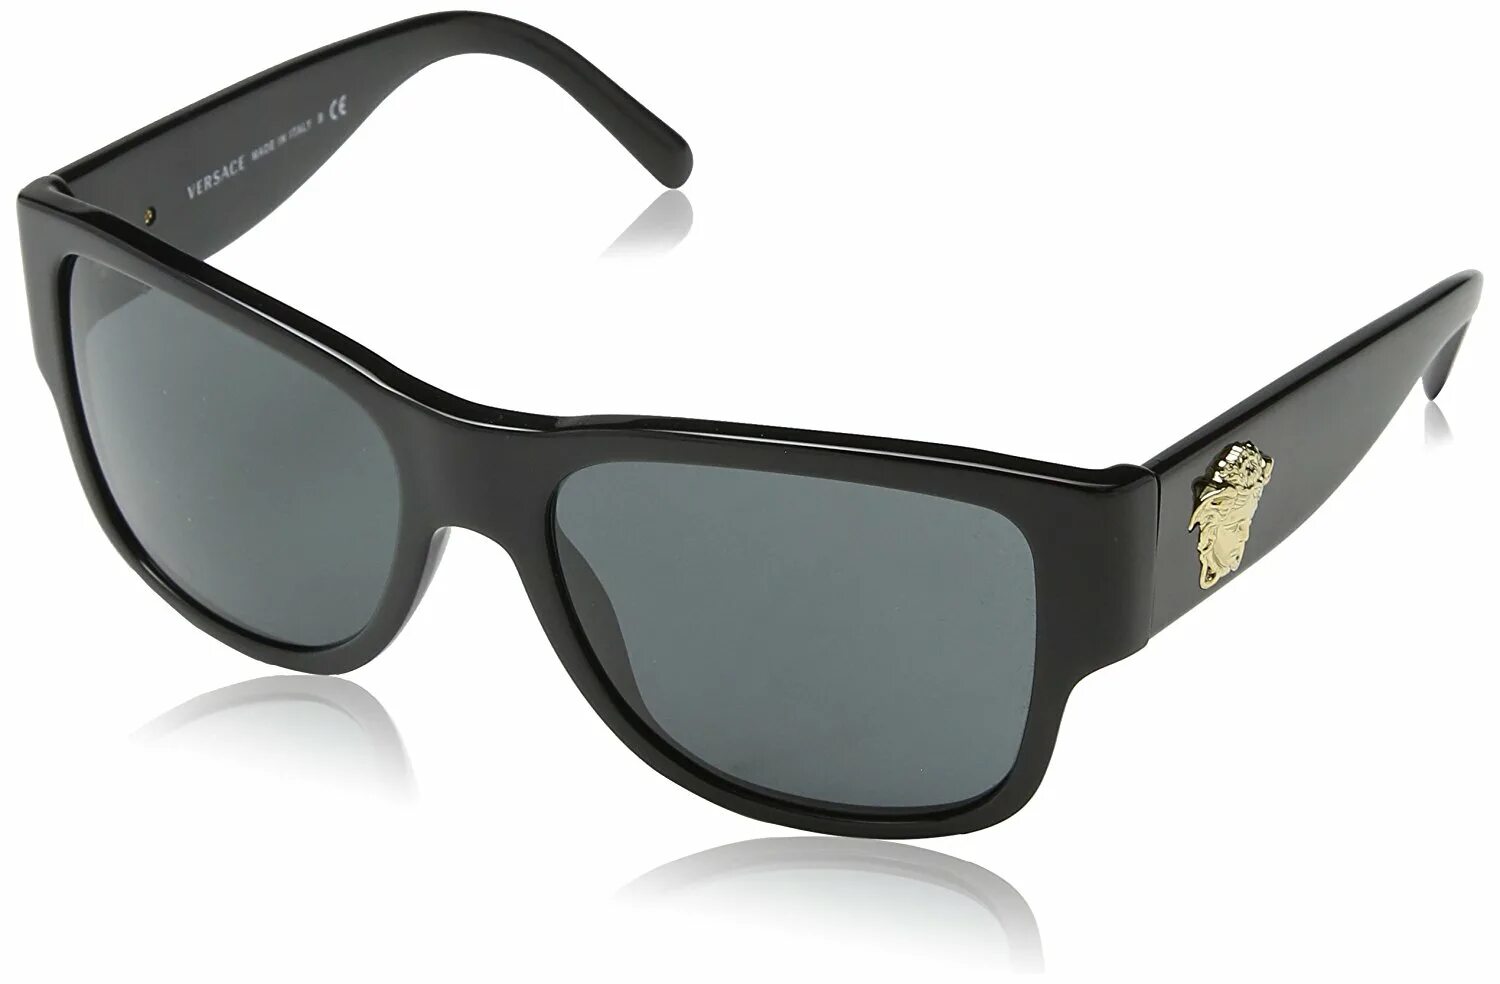 Очки Versace ve4361. Versace 0ve4379 / 56 gb1/87. Версаче очки Италия. Versace Sunglasses men. Купить затемненные очки